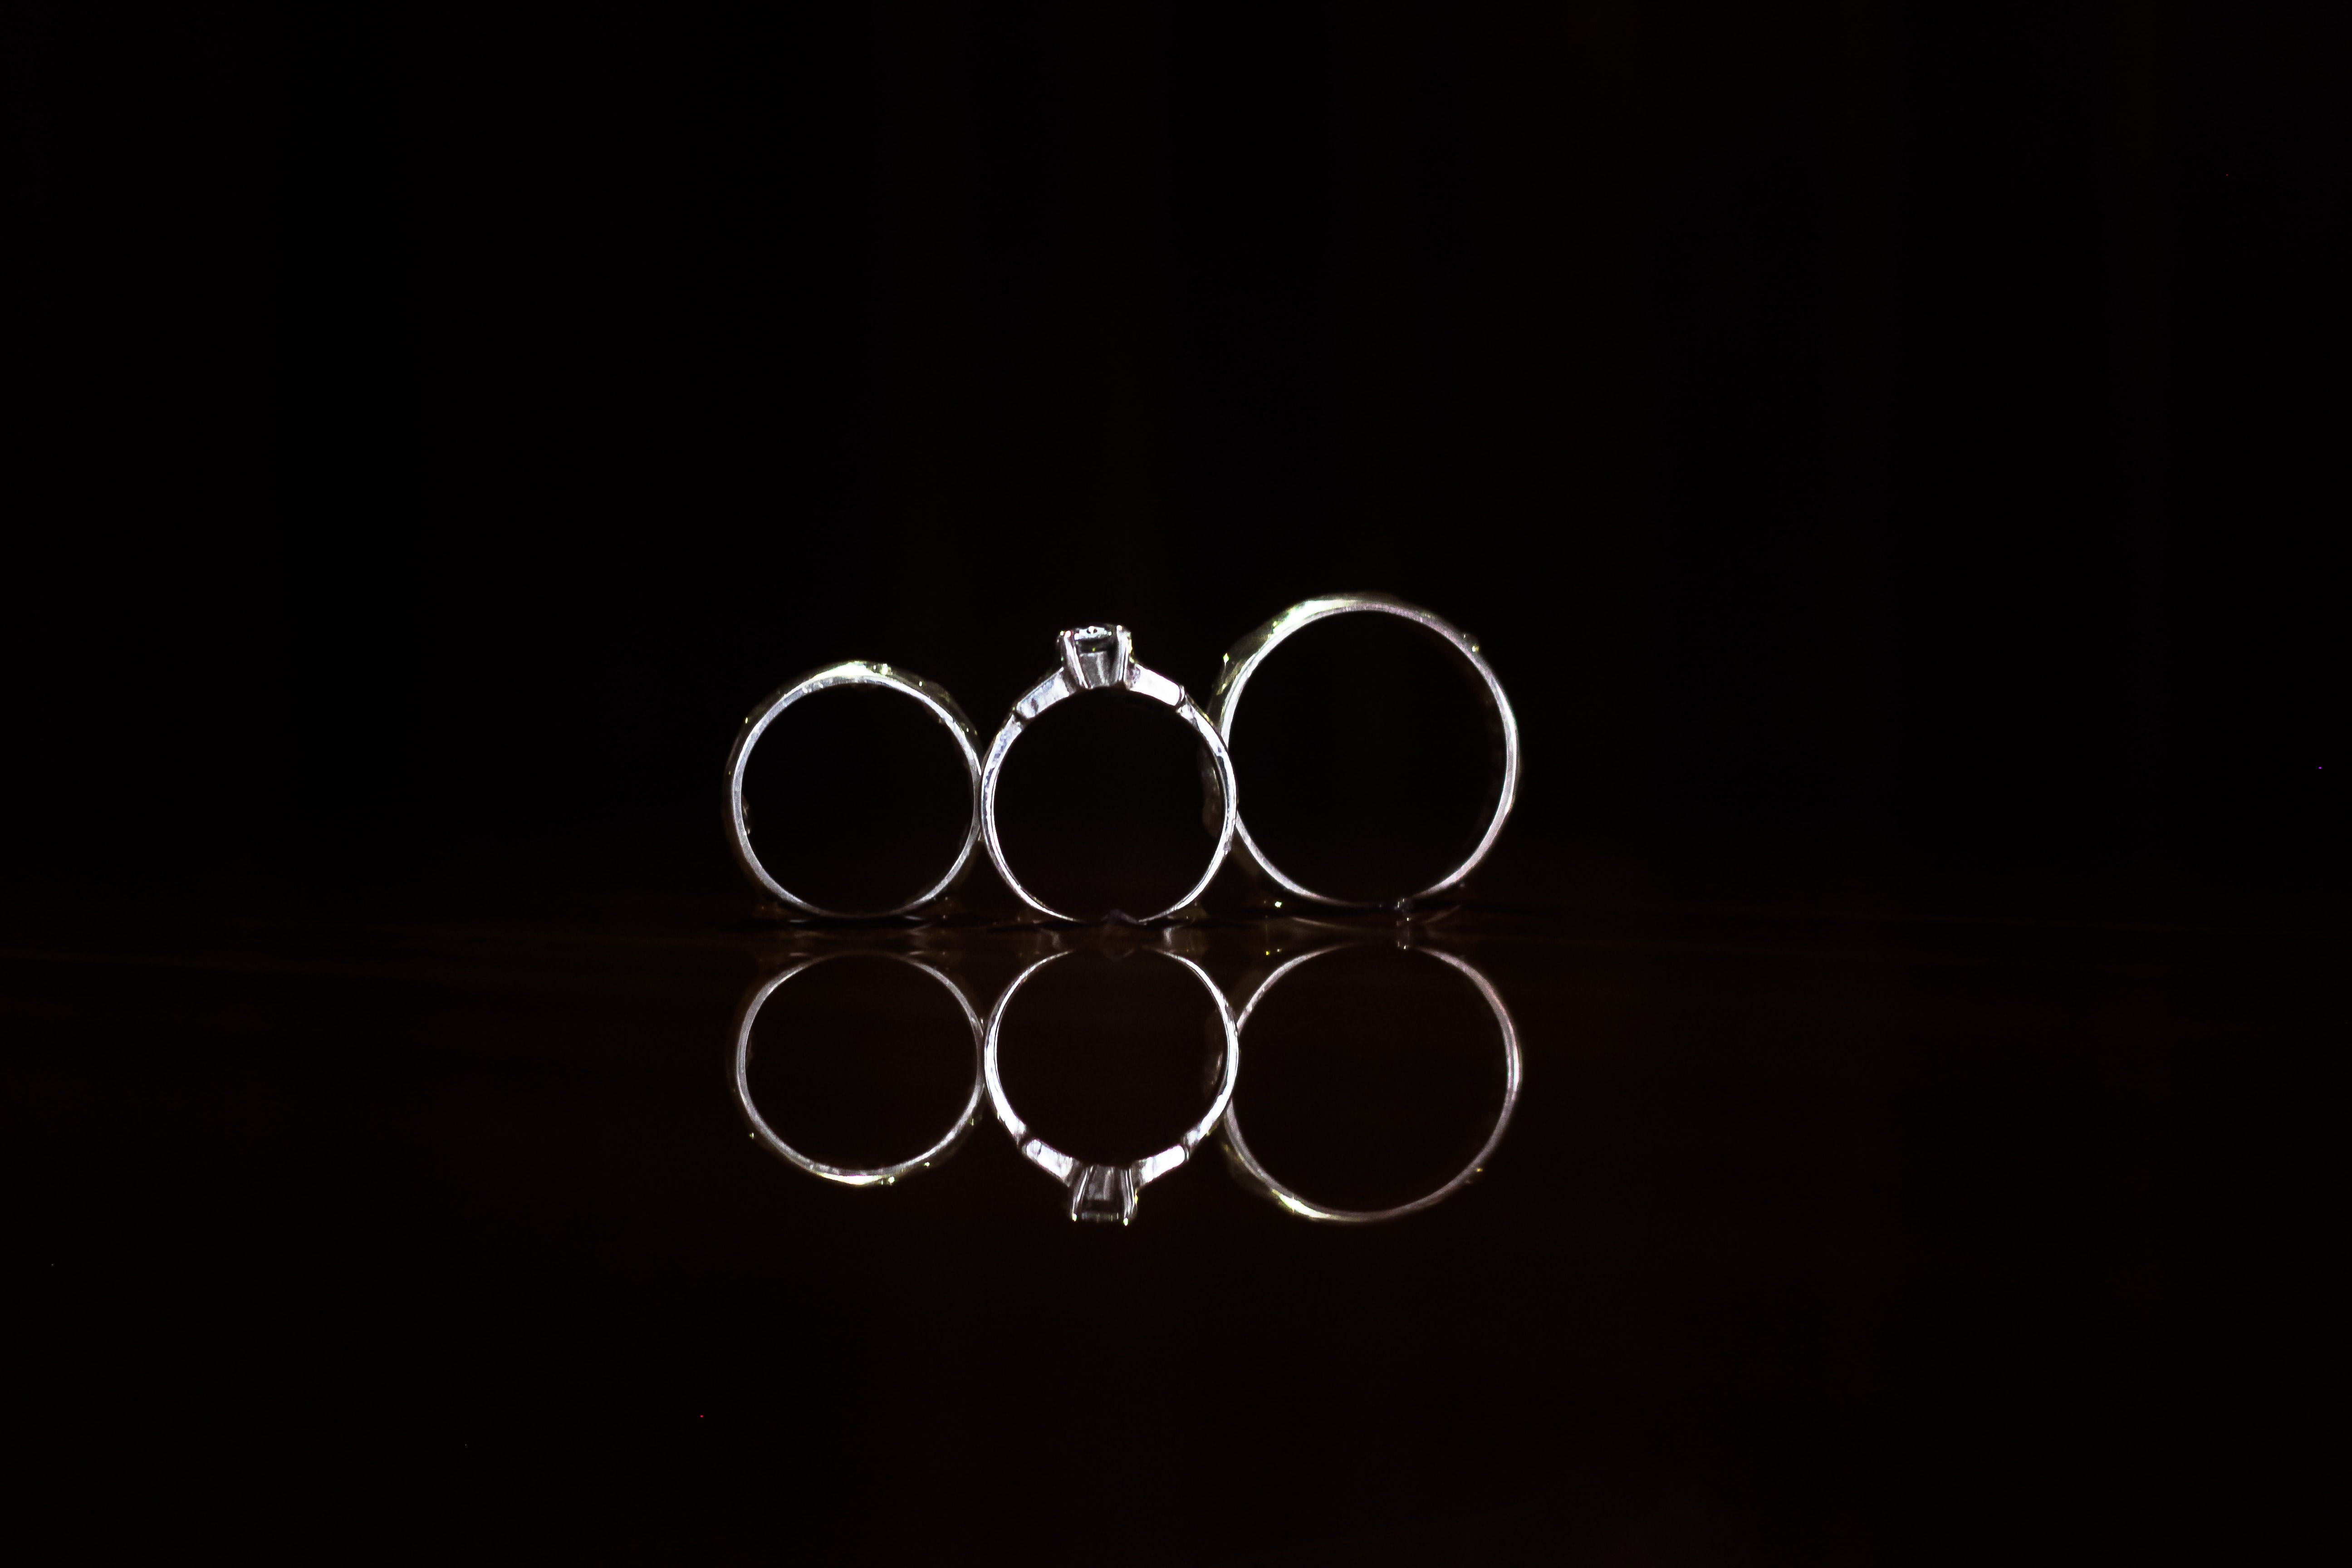 stainless steel wedding rings in dark background